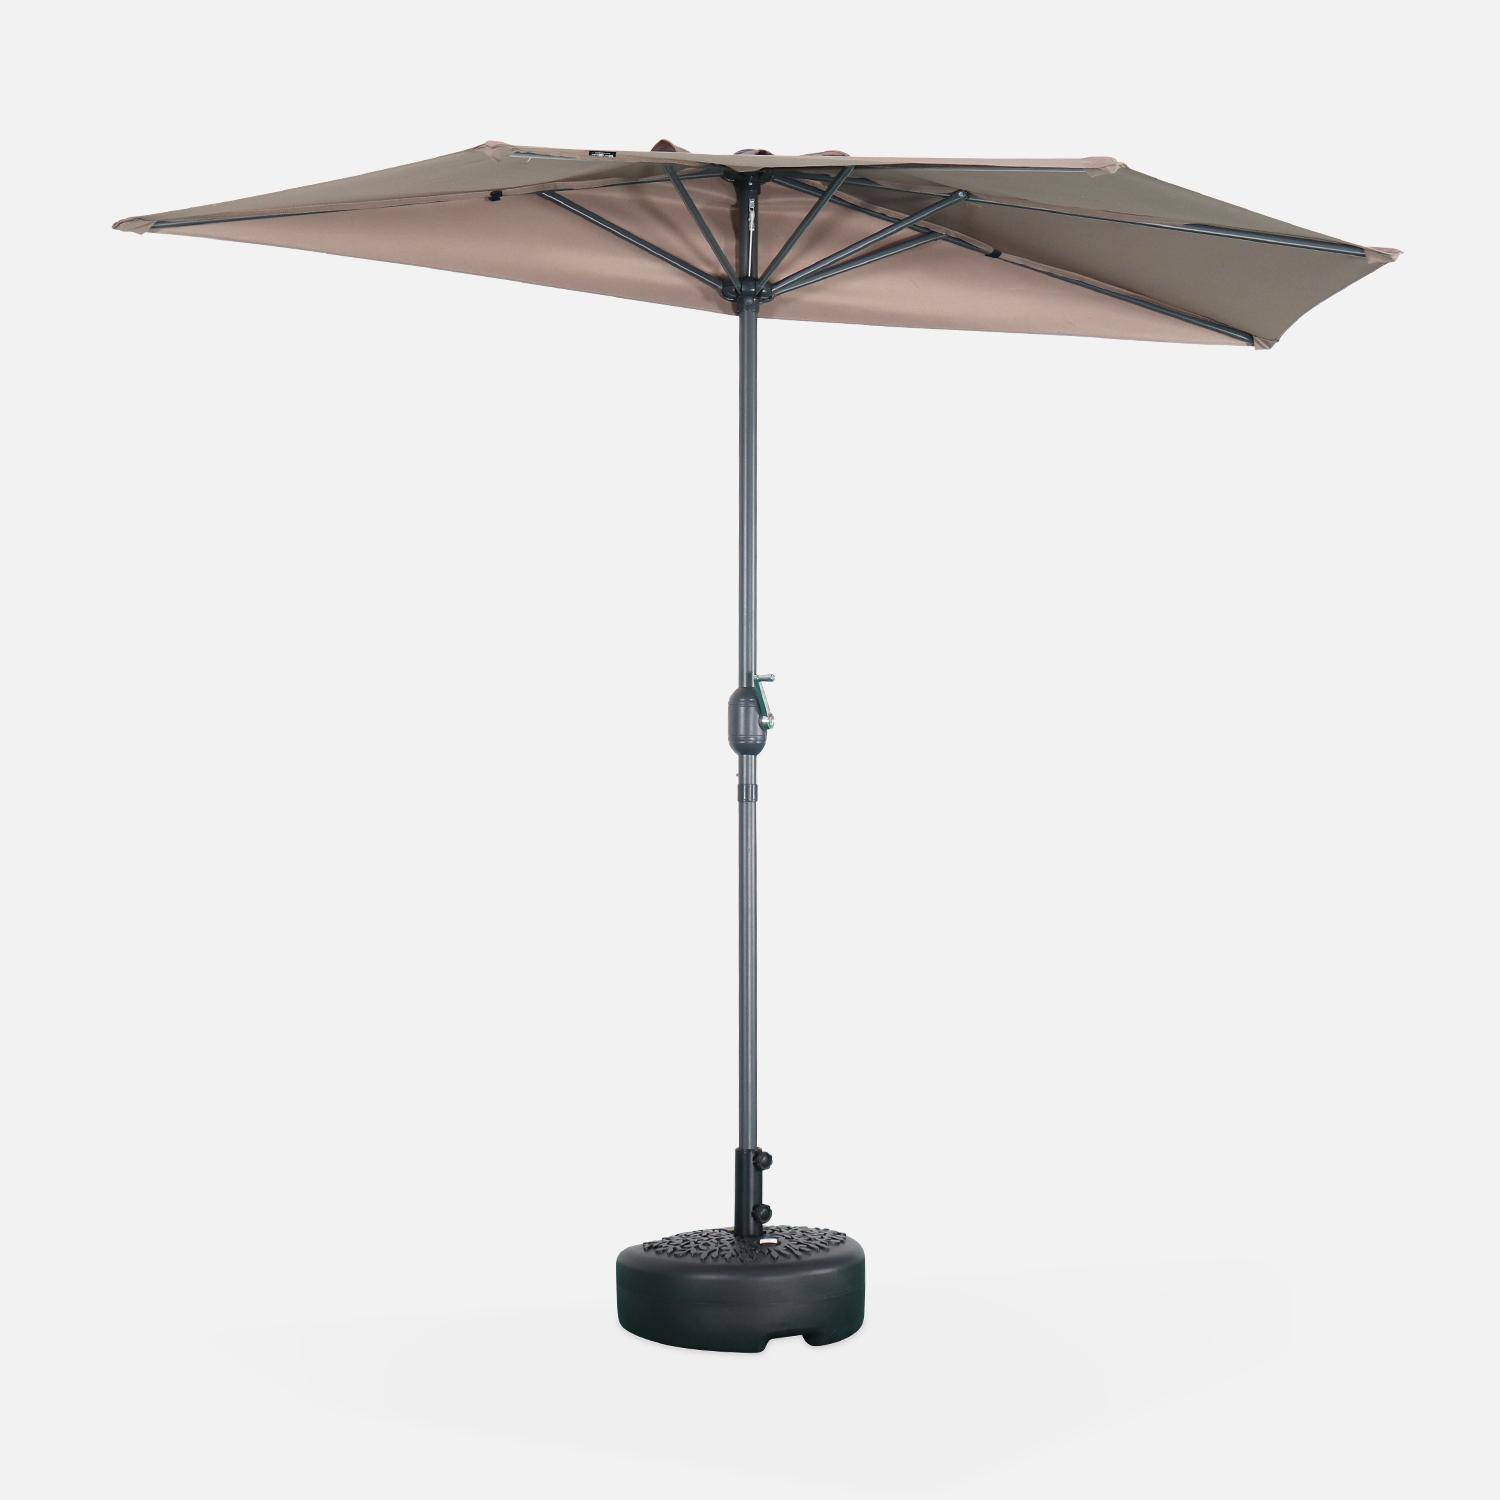  Parasol para balcón Ø250cm  – CALVI – Pequeño parasol recto, mástil en aluminio con manivela, tela color pardo  Photo1